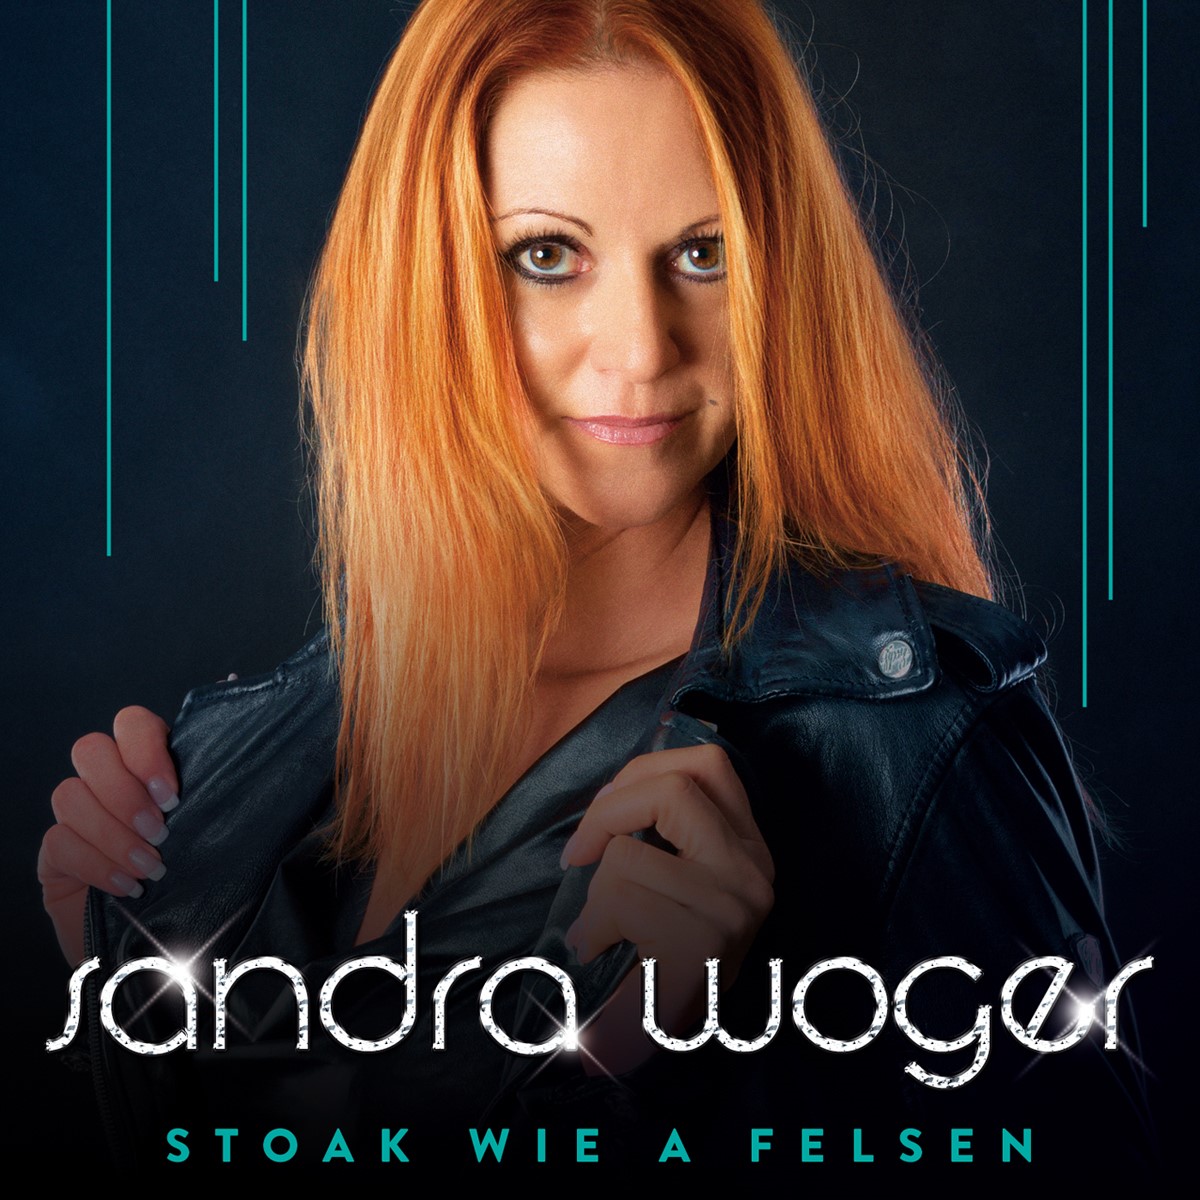 Schlagerhit der Musikerin Sandra Woger